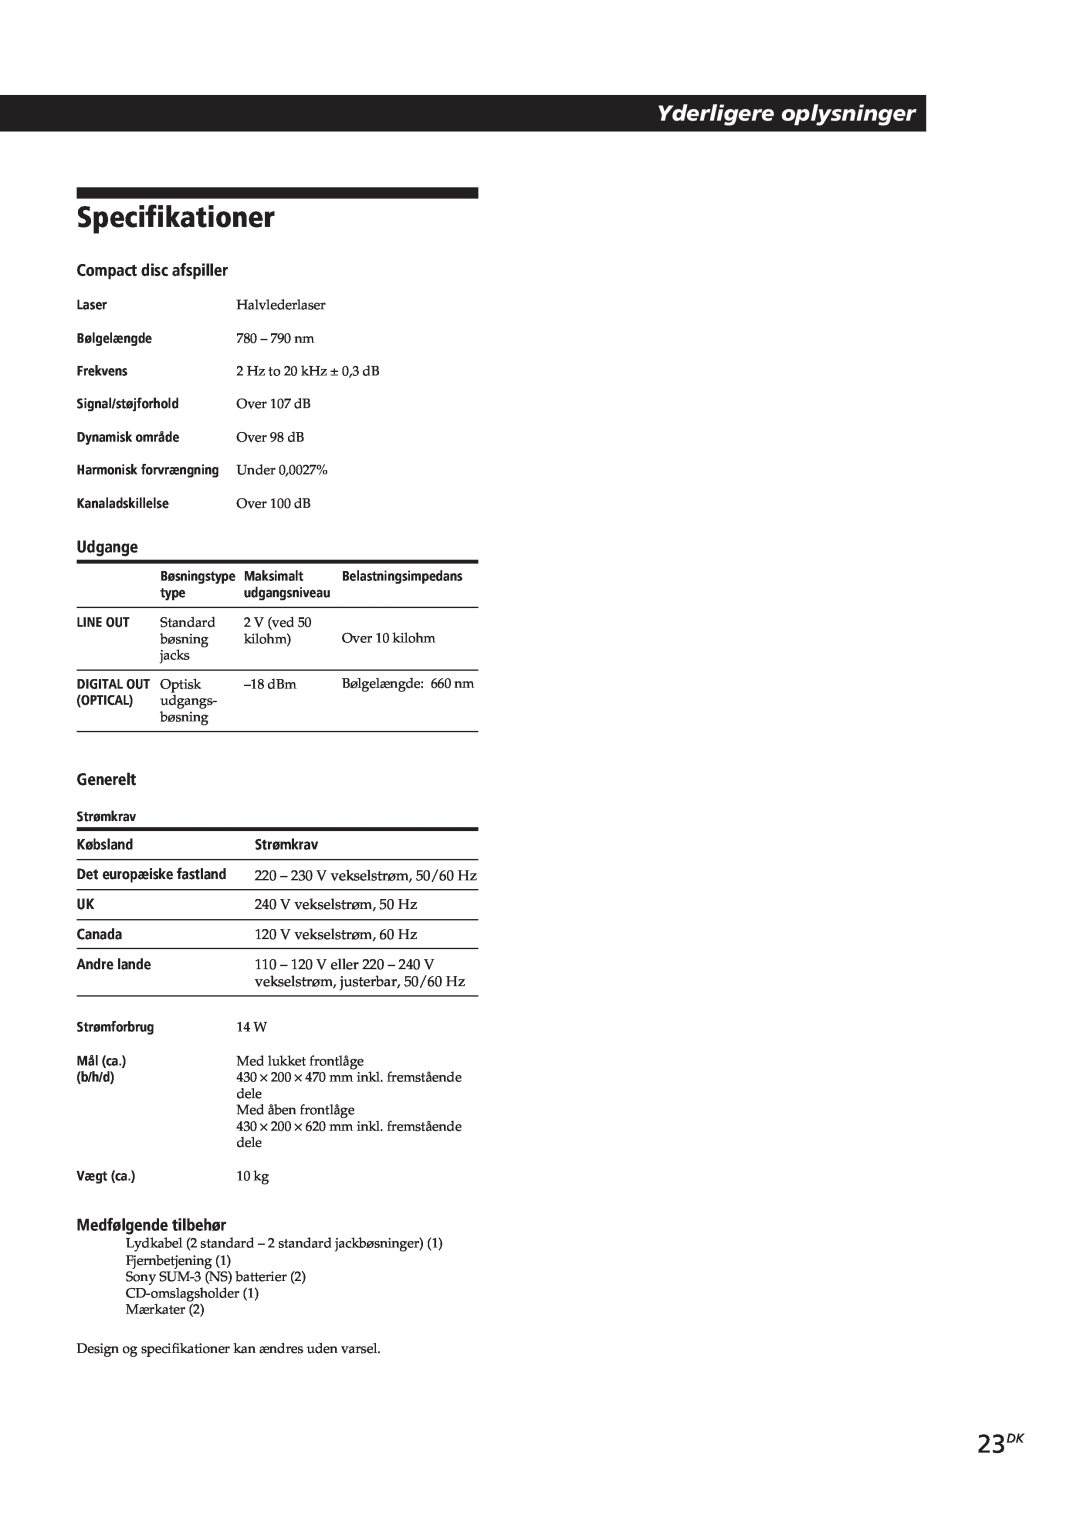 Sony CDP-CX153 manual Specifikationer, 23DK, Yderligere oplysninger, Compact disc afspiller, Udgange, Generelt, Købsland Ê 